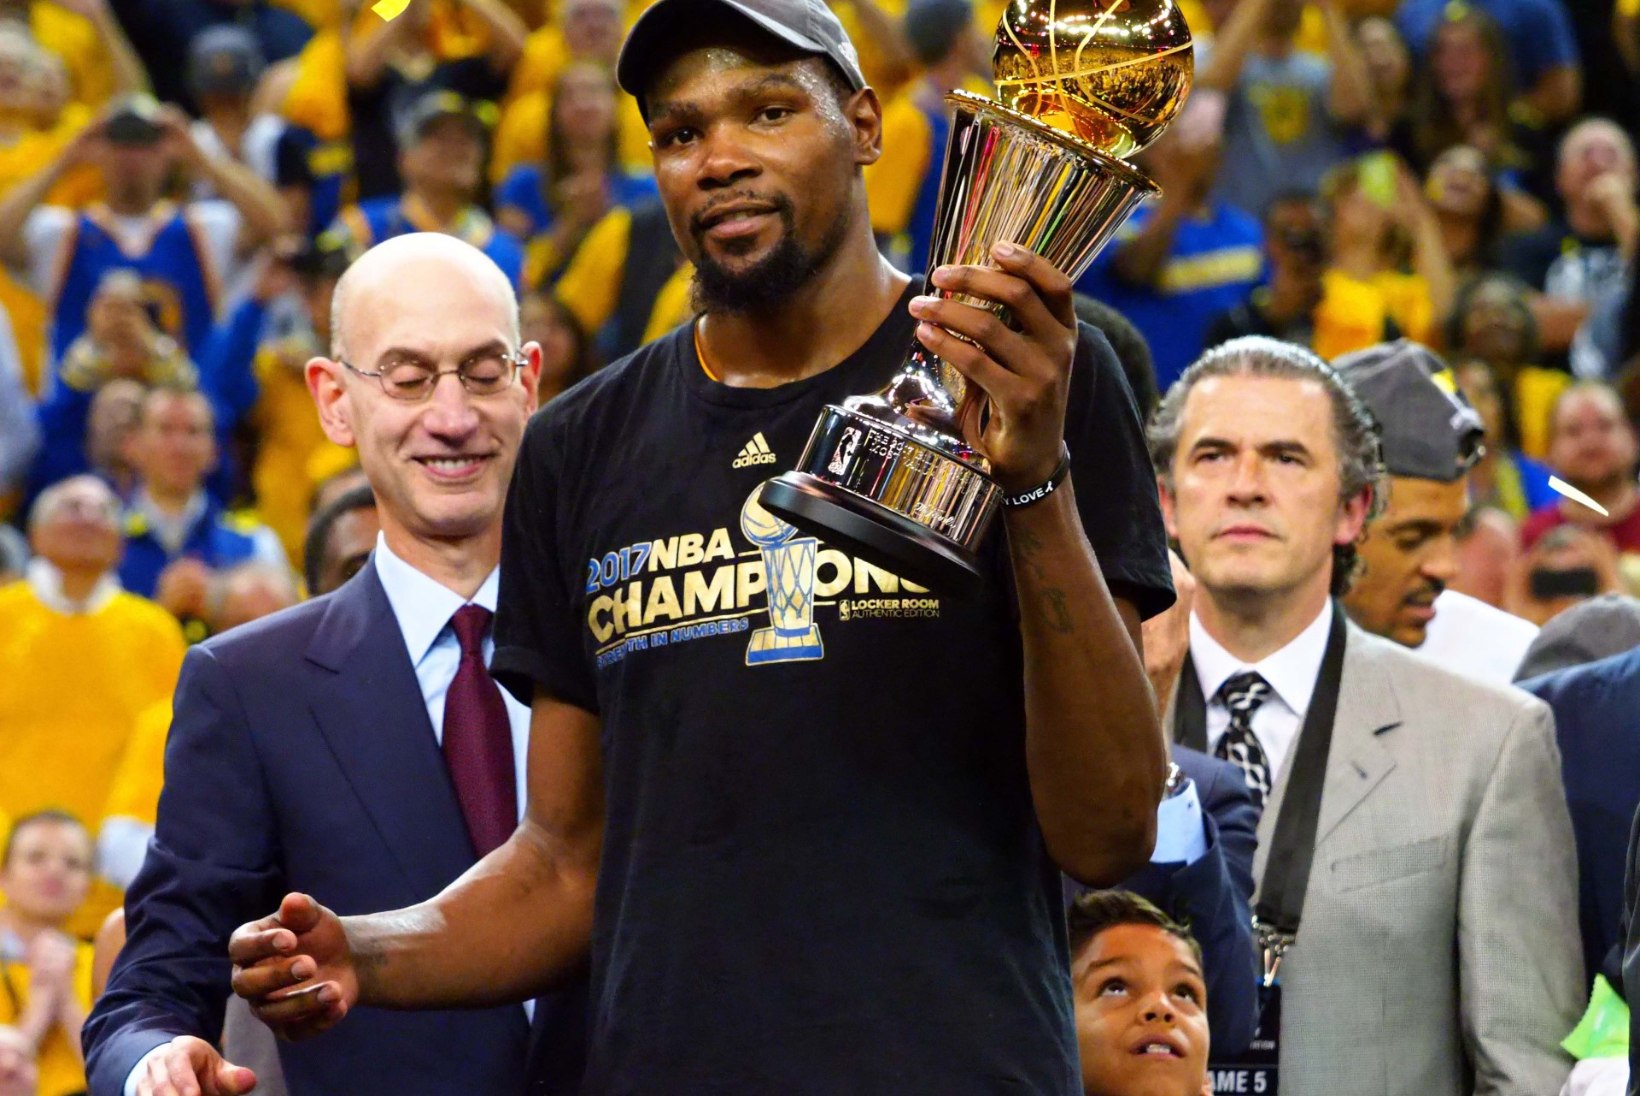 NBA finaali MVP Durant lepib maksimumlepingust vähemaga. Miks?